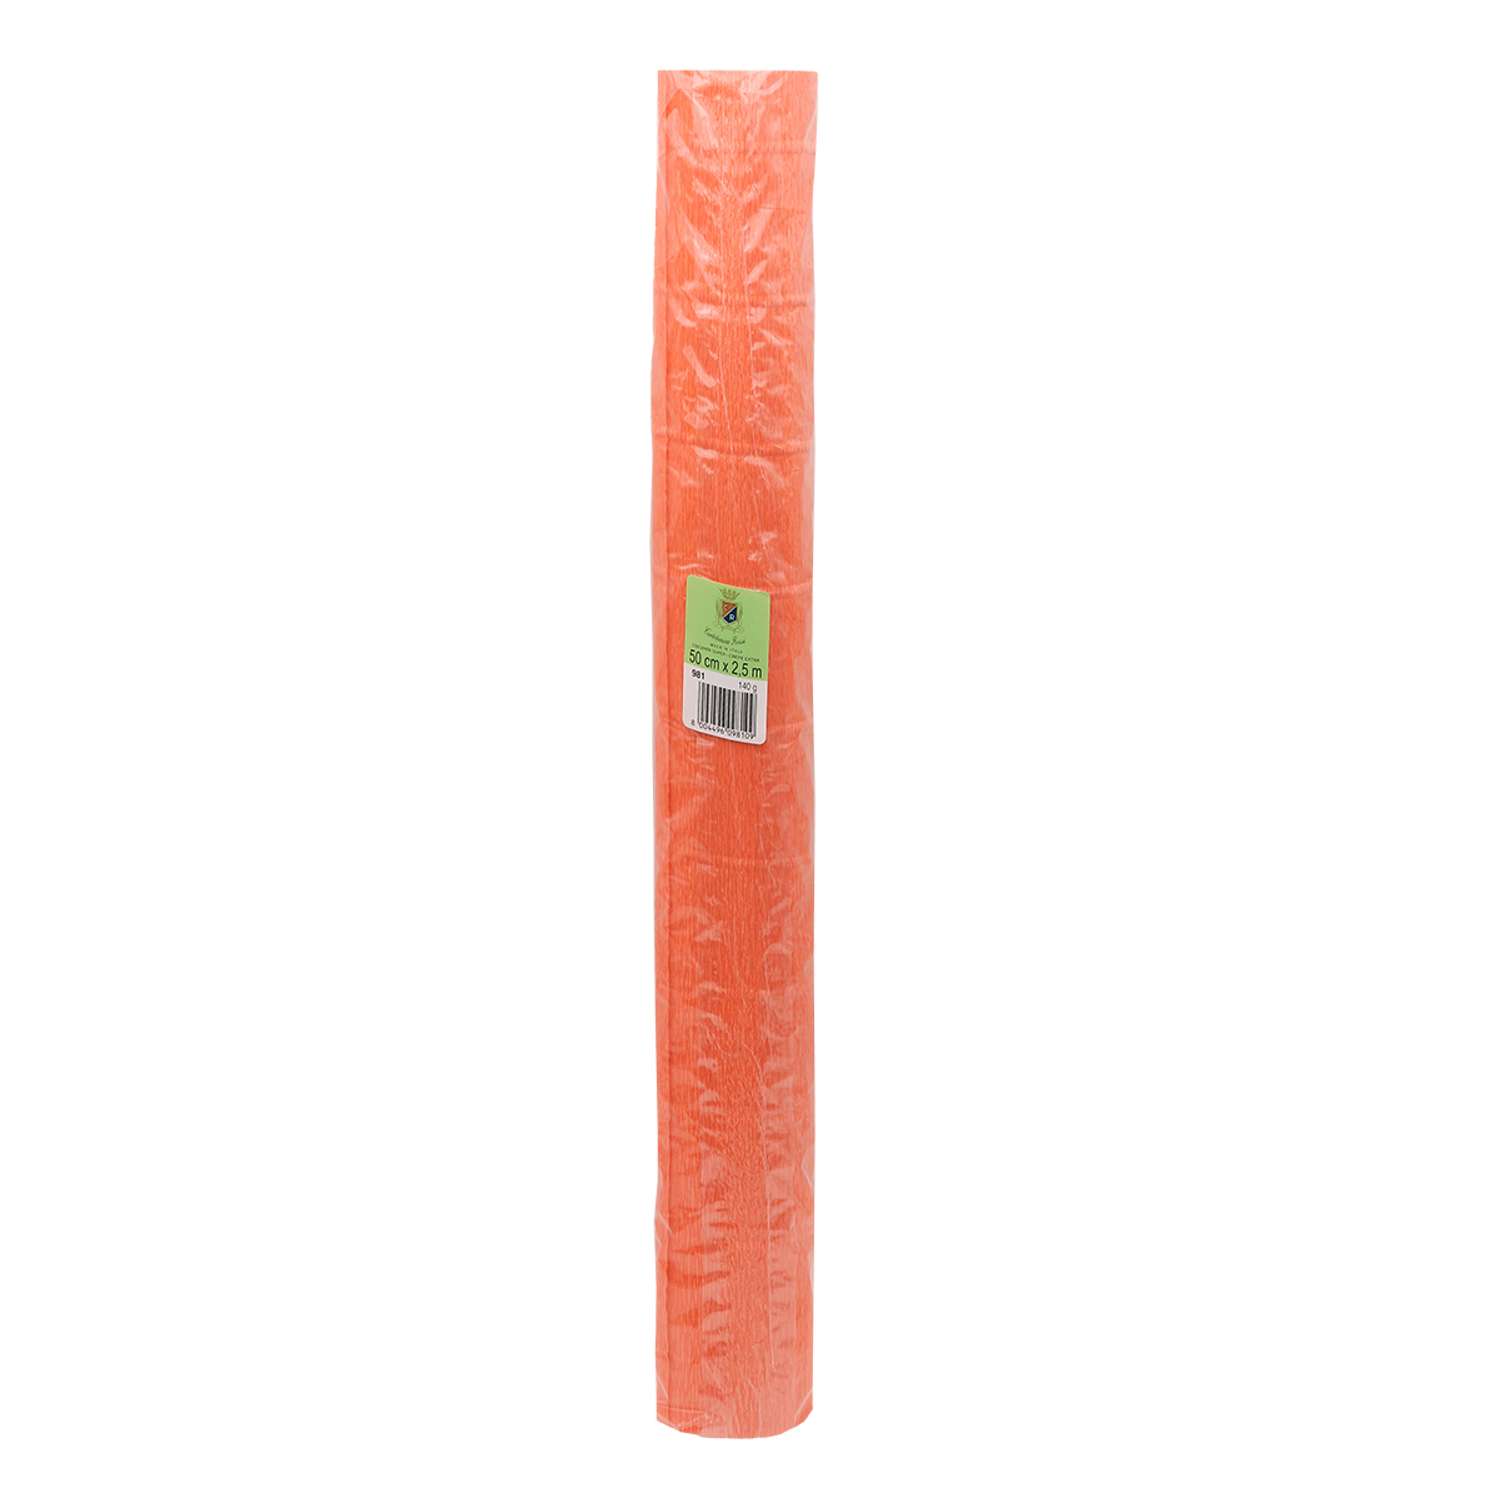 Бумага Айрис гофрированная креповая для творчества 50 см х 2.5 м 140 гр оранжевая - фото 4